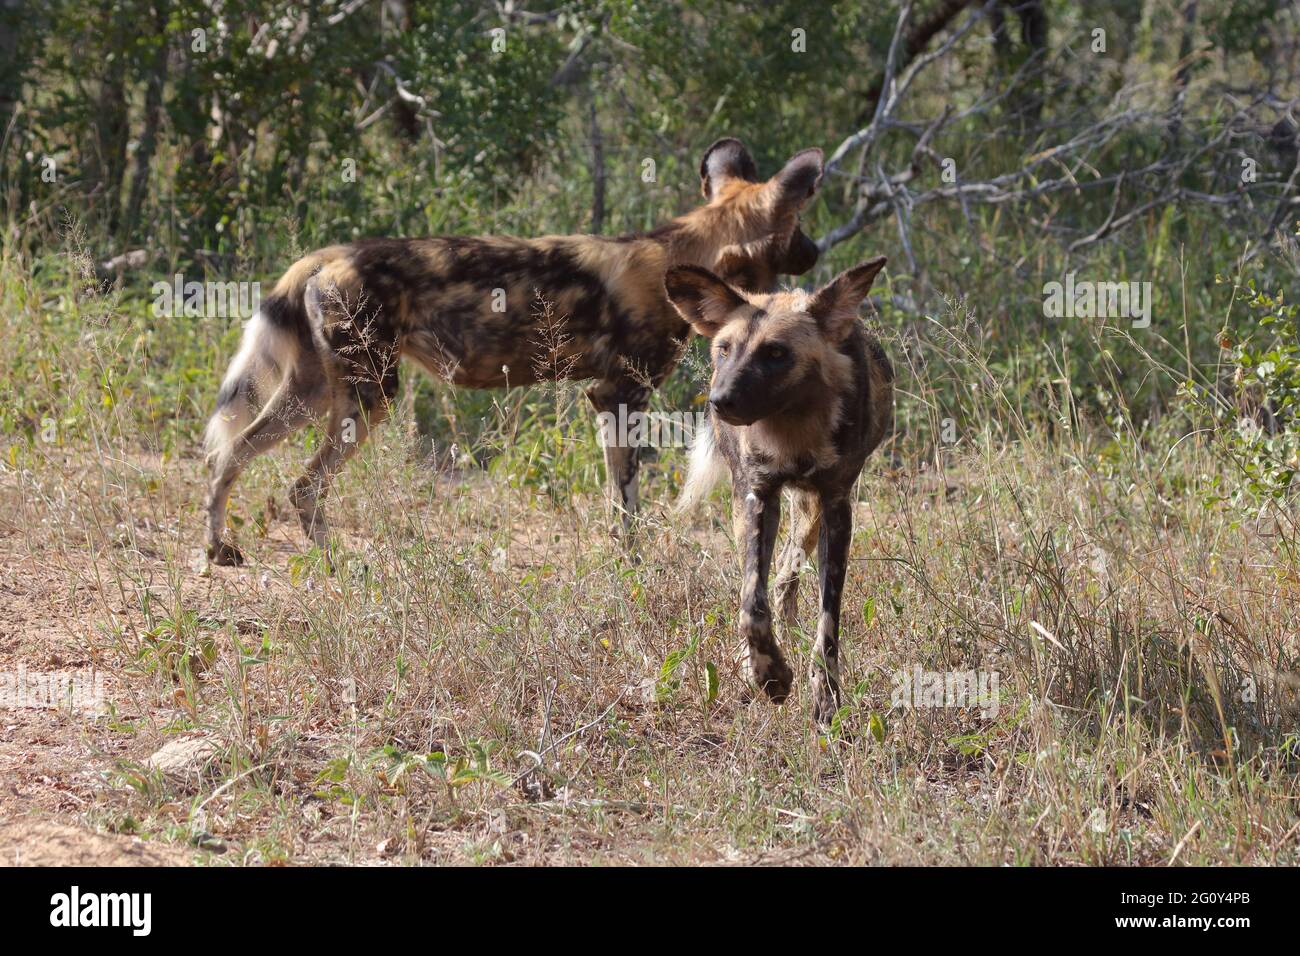 Afrikanischer Wildhund / African wild dog / Lycaon pictus Stock Photo